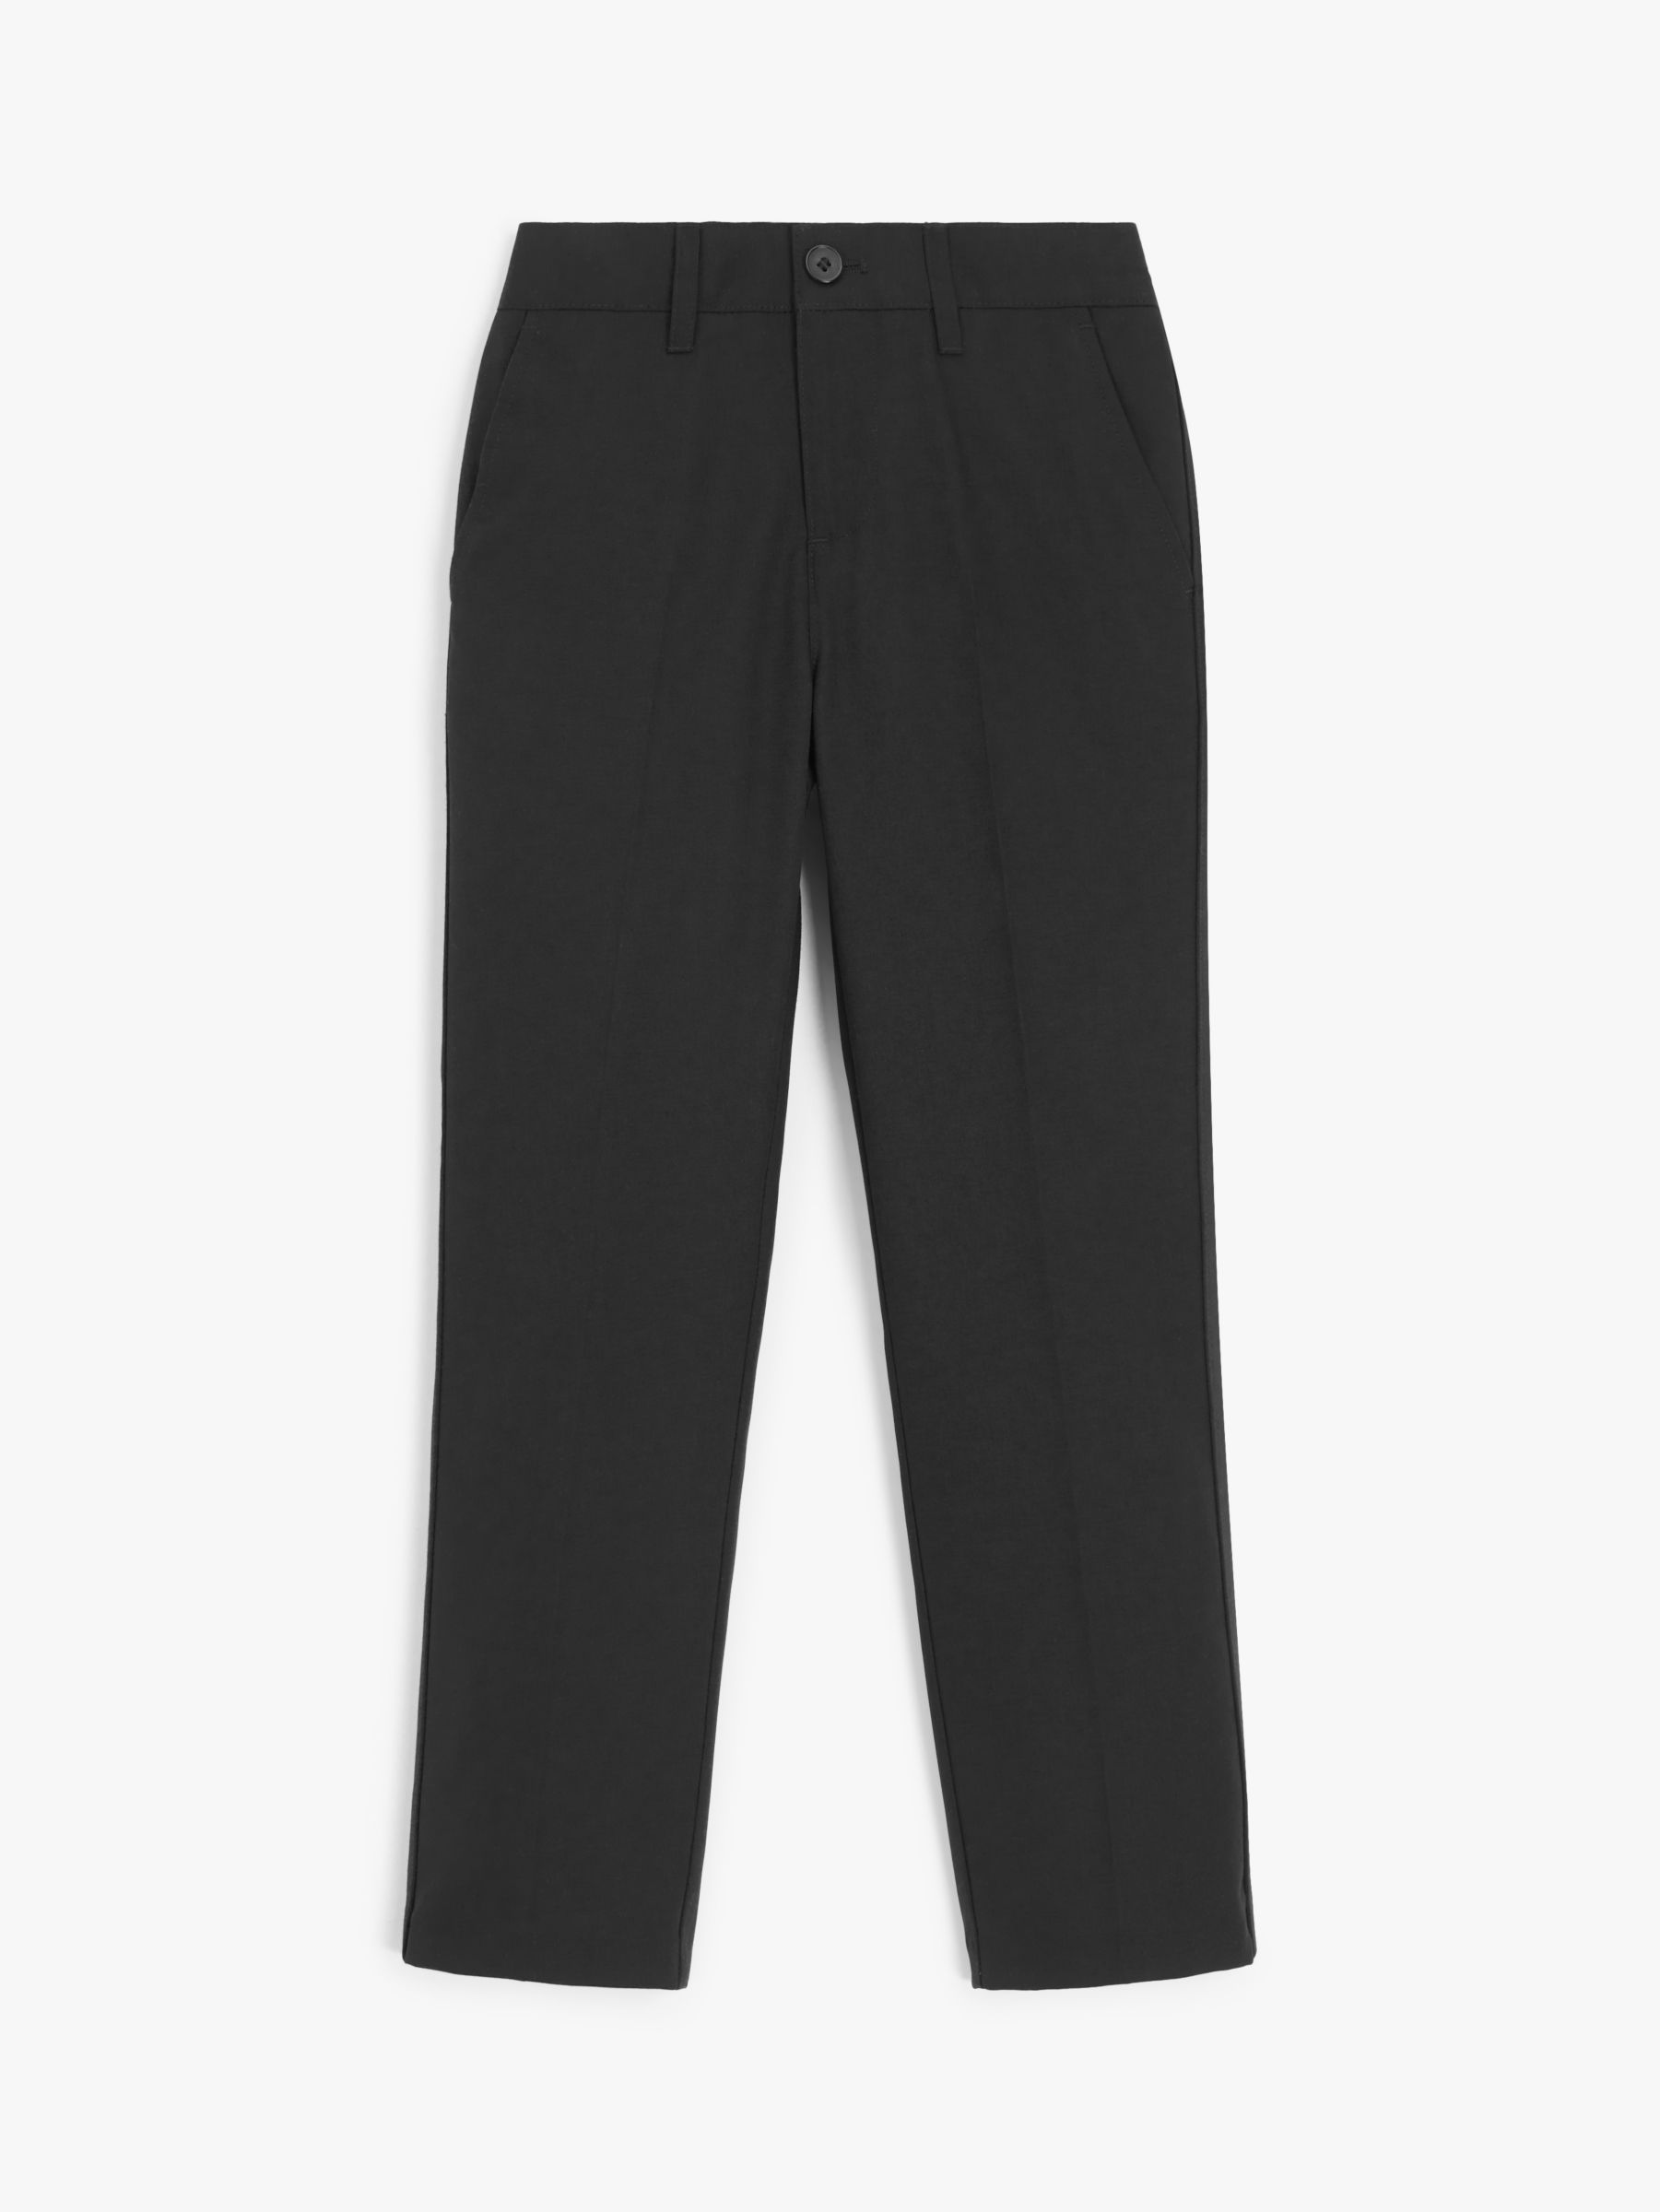 Black Tuxedo Pants for Girls/ Toddler Slim Fit Tuxedo Trousers